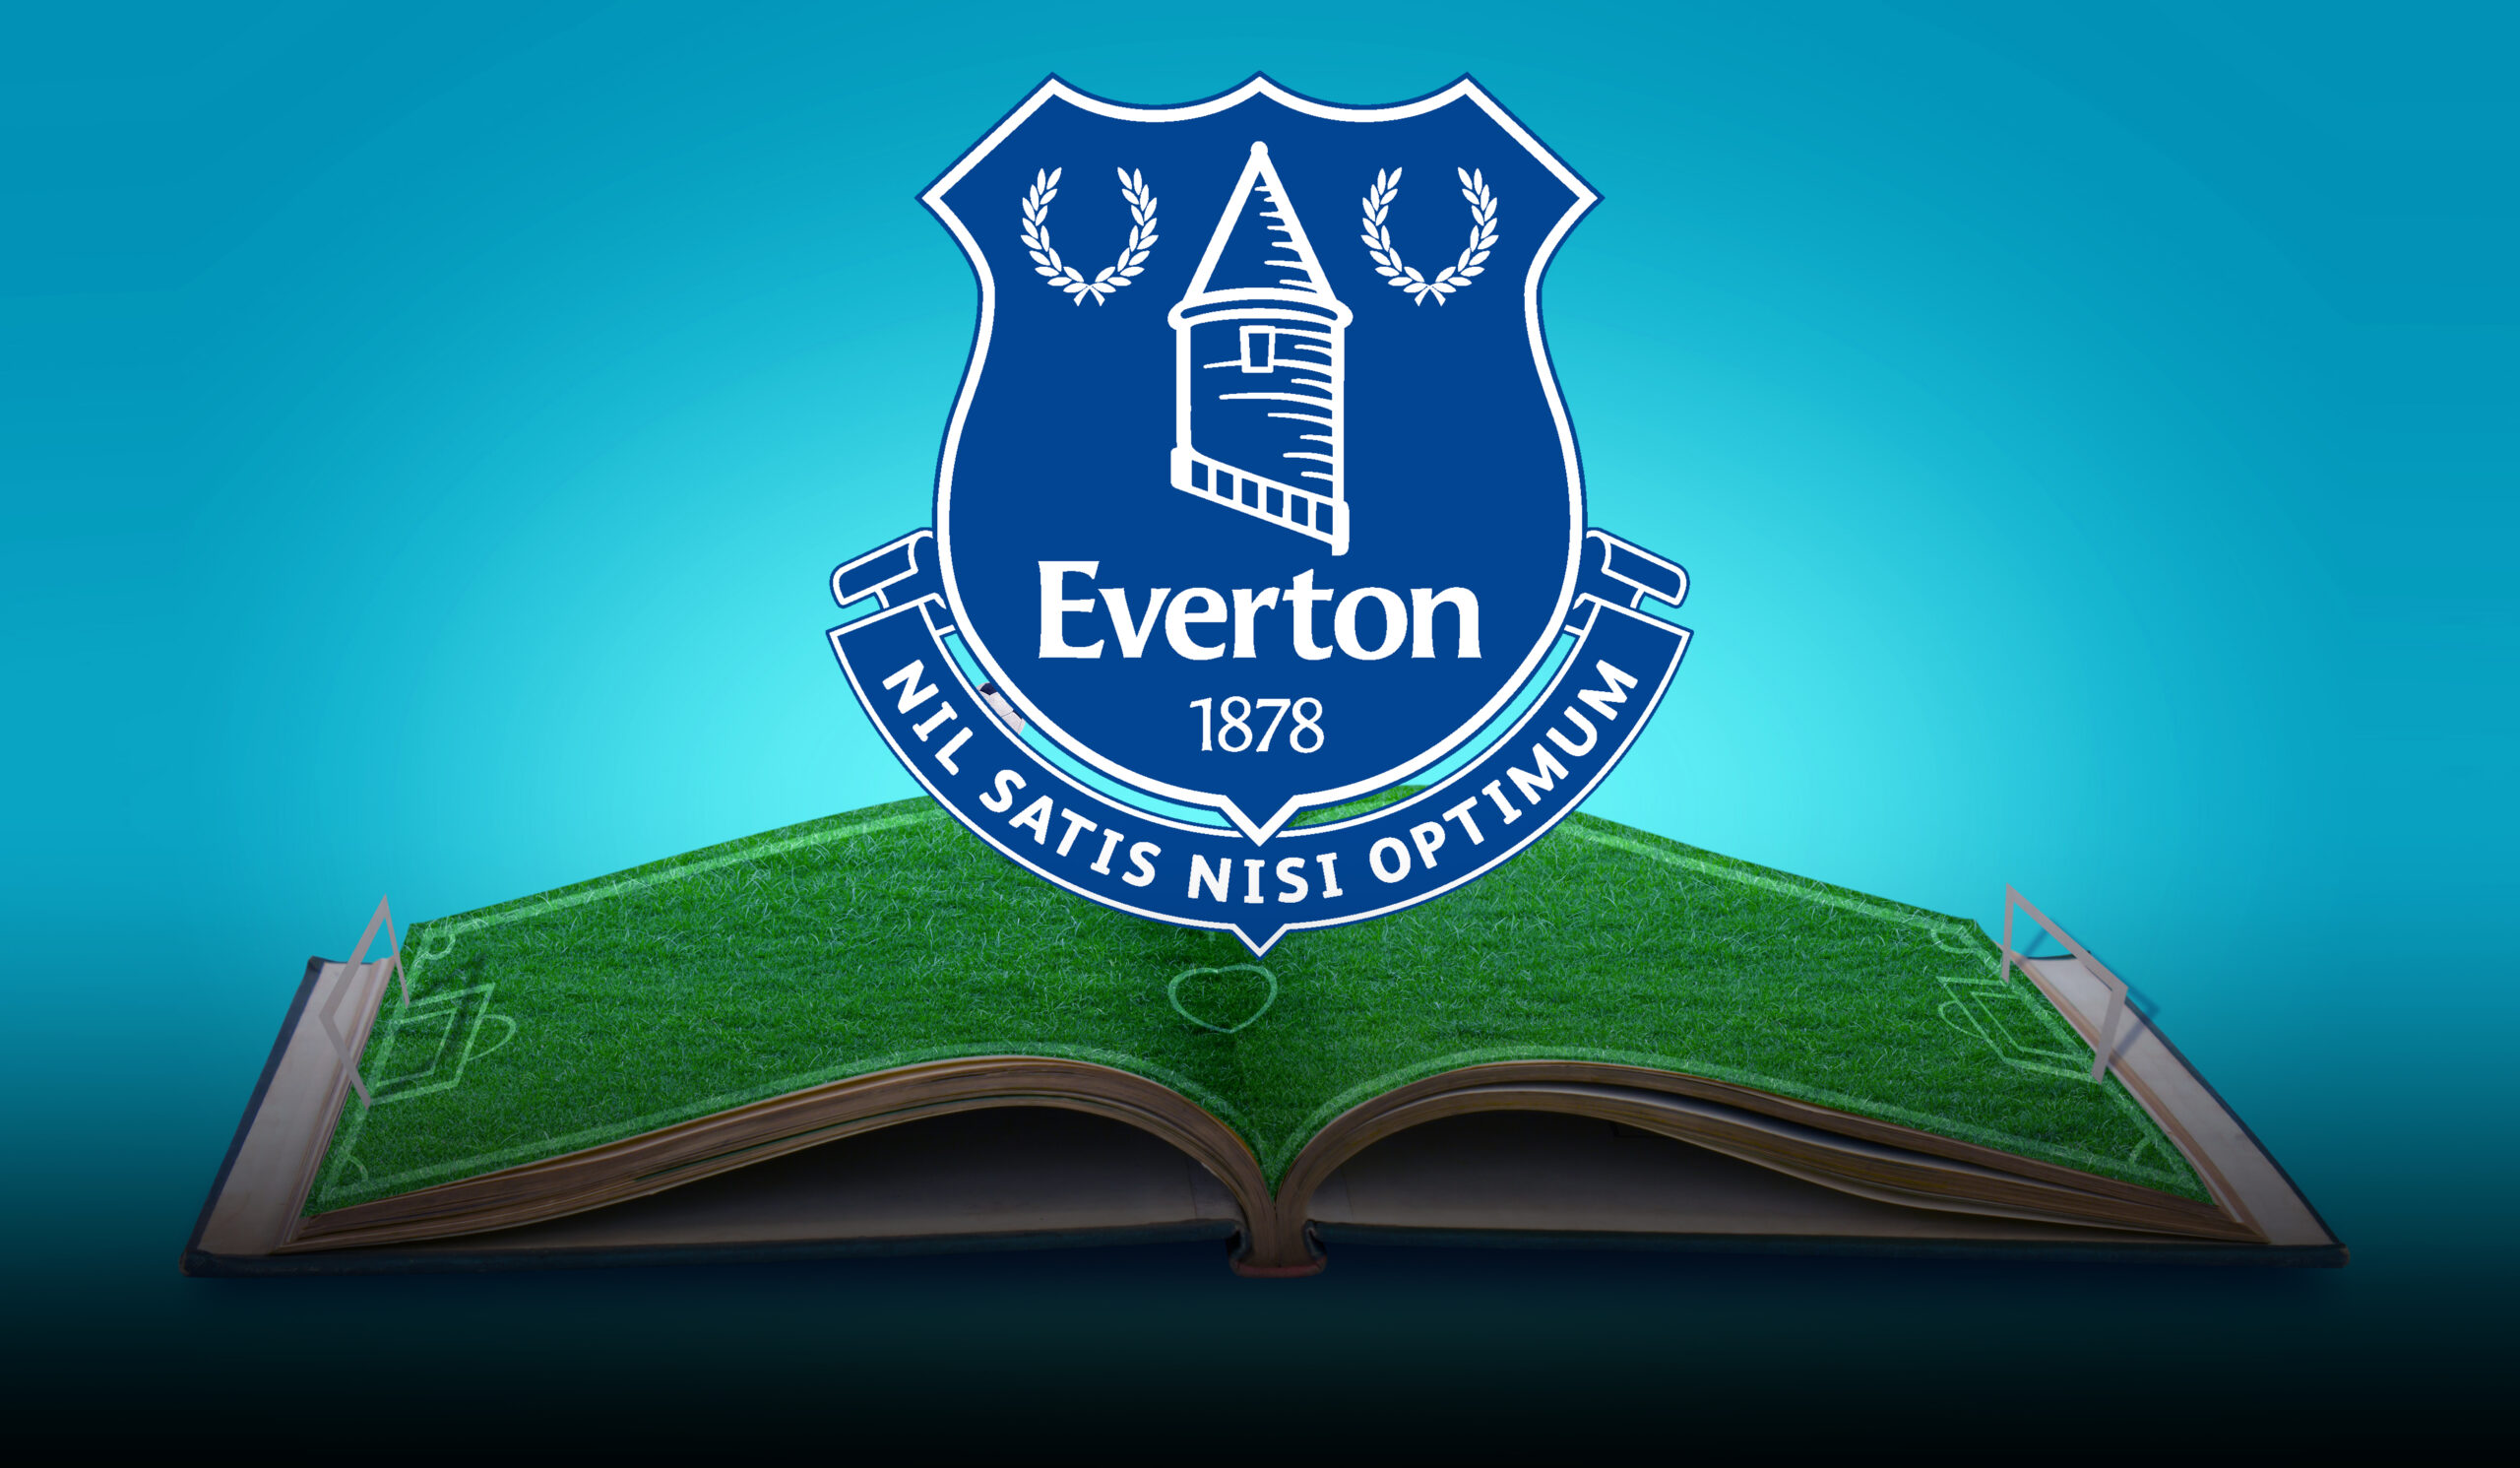 เอฟเวอร์ตัน (Everton) สโมสรฟุตบอลในพรีเมียร์ลีคที่ขับเคลื่อนด้วยระบบ HR